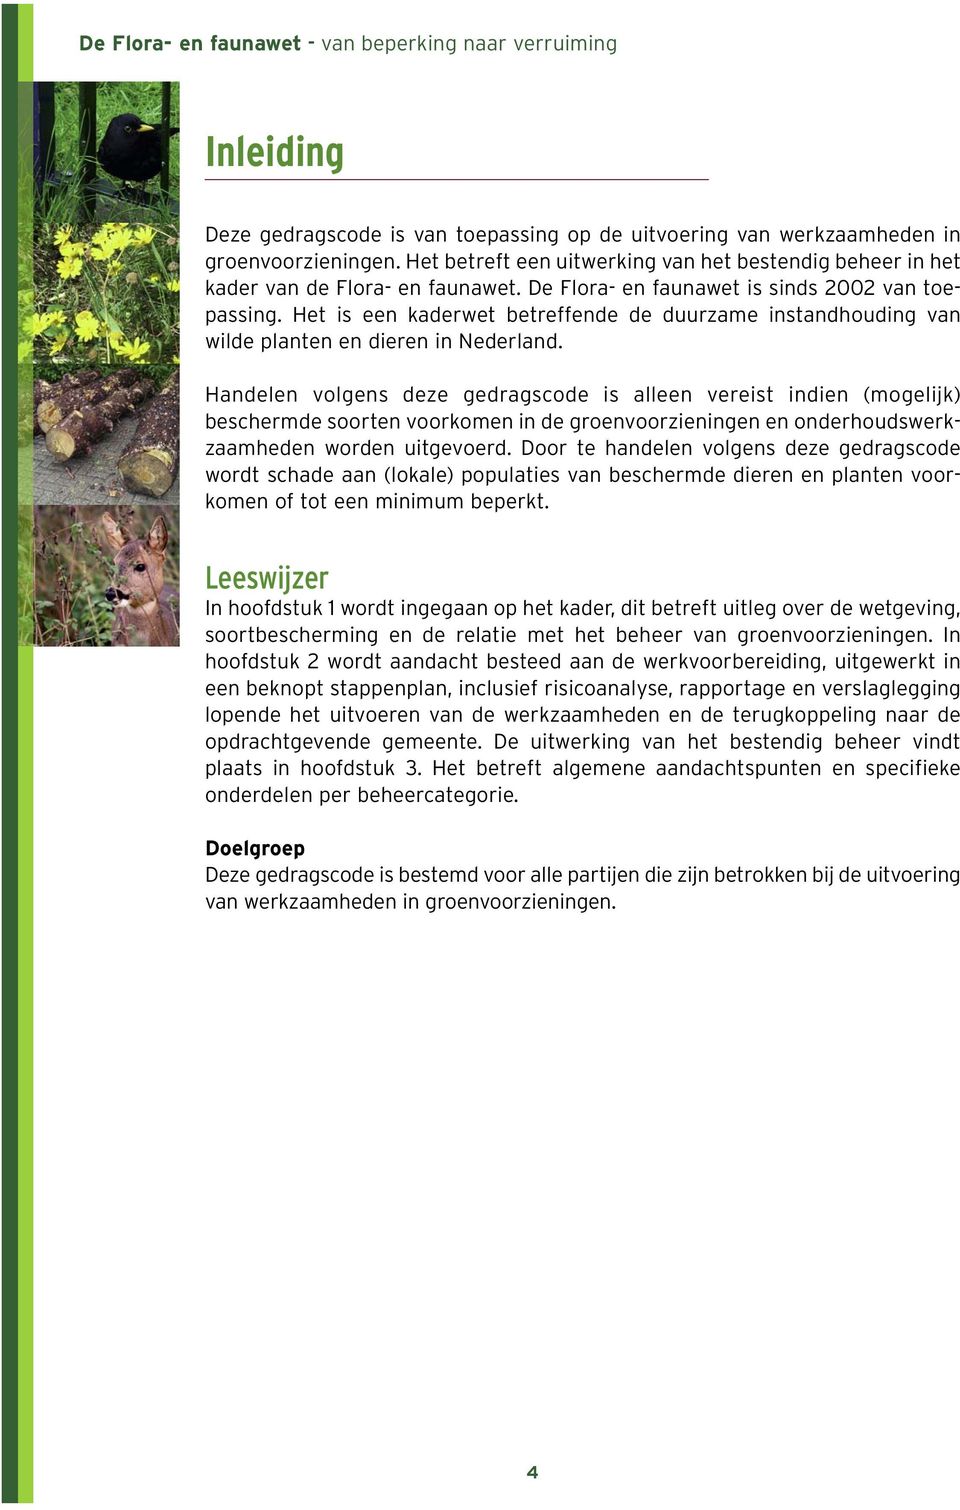 Het is een kaderwet betreffende de duurzame instandhouding van wilde planten en dieren in Nederland.